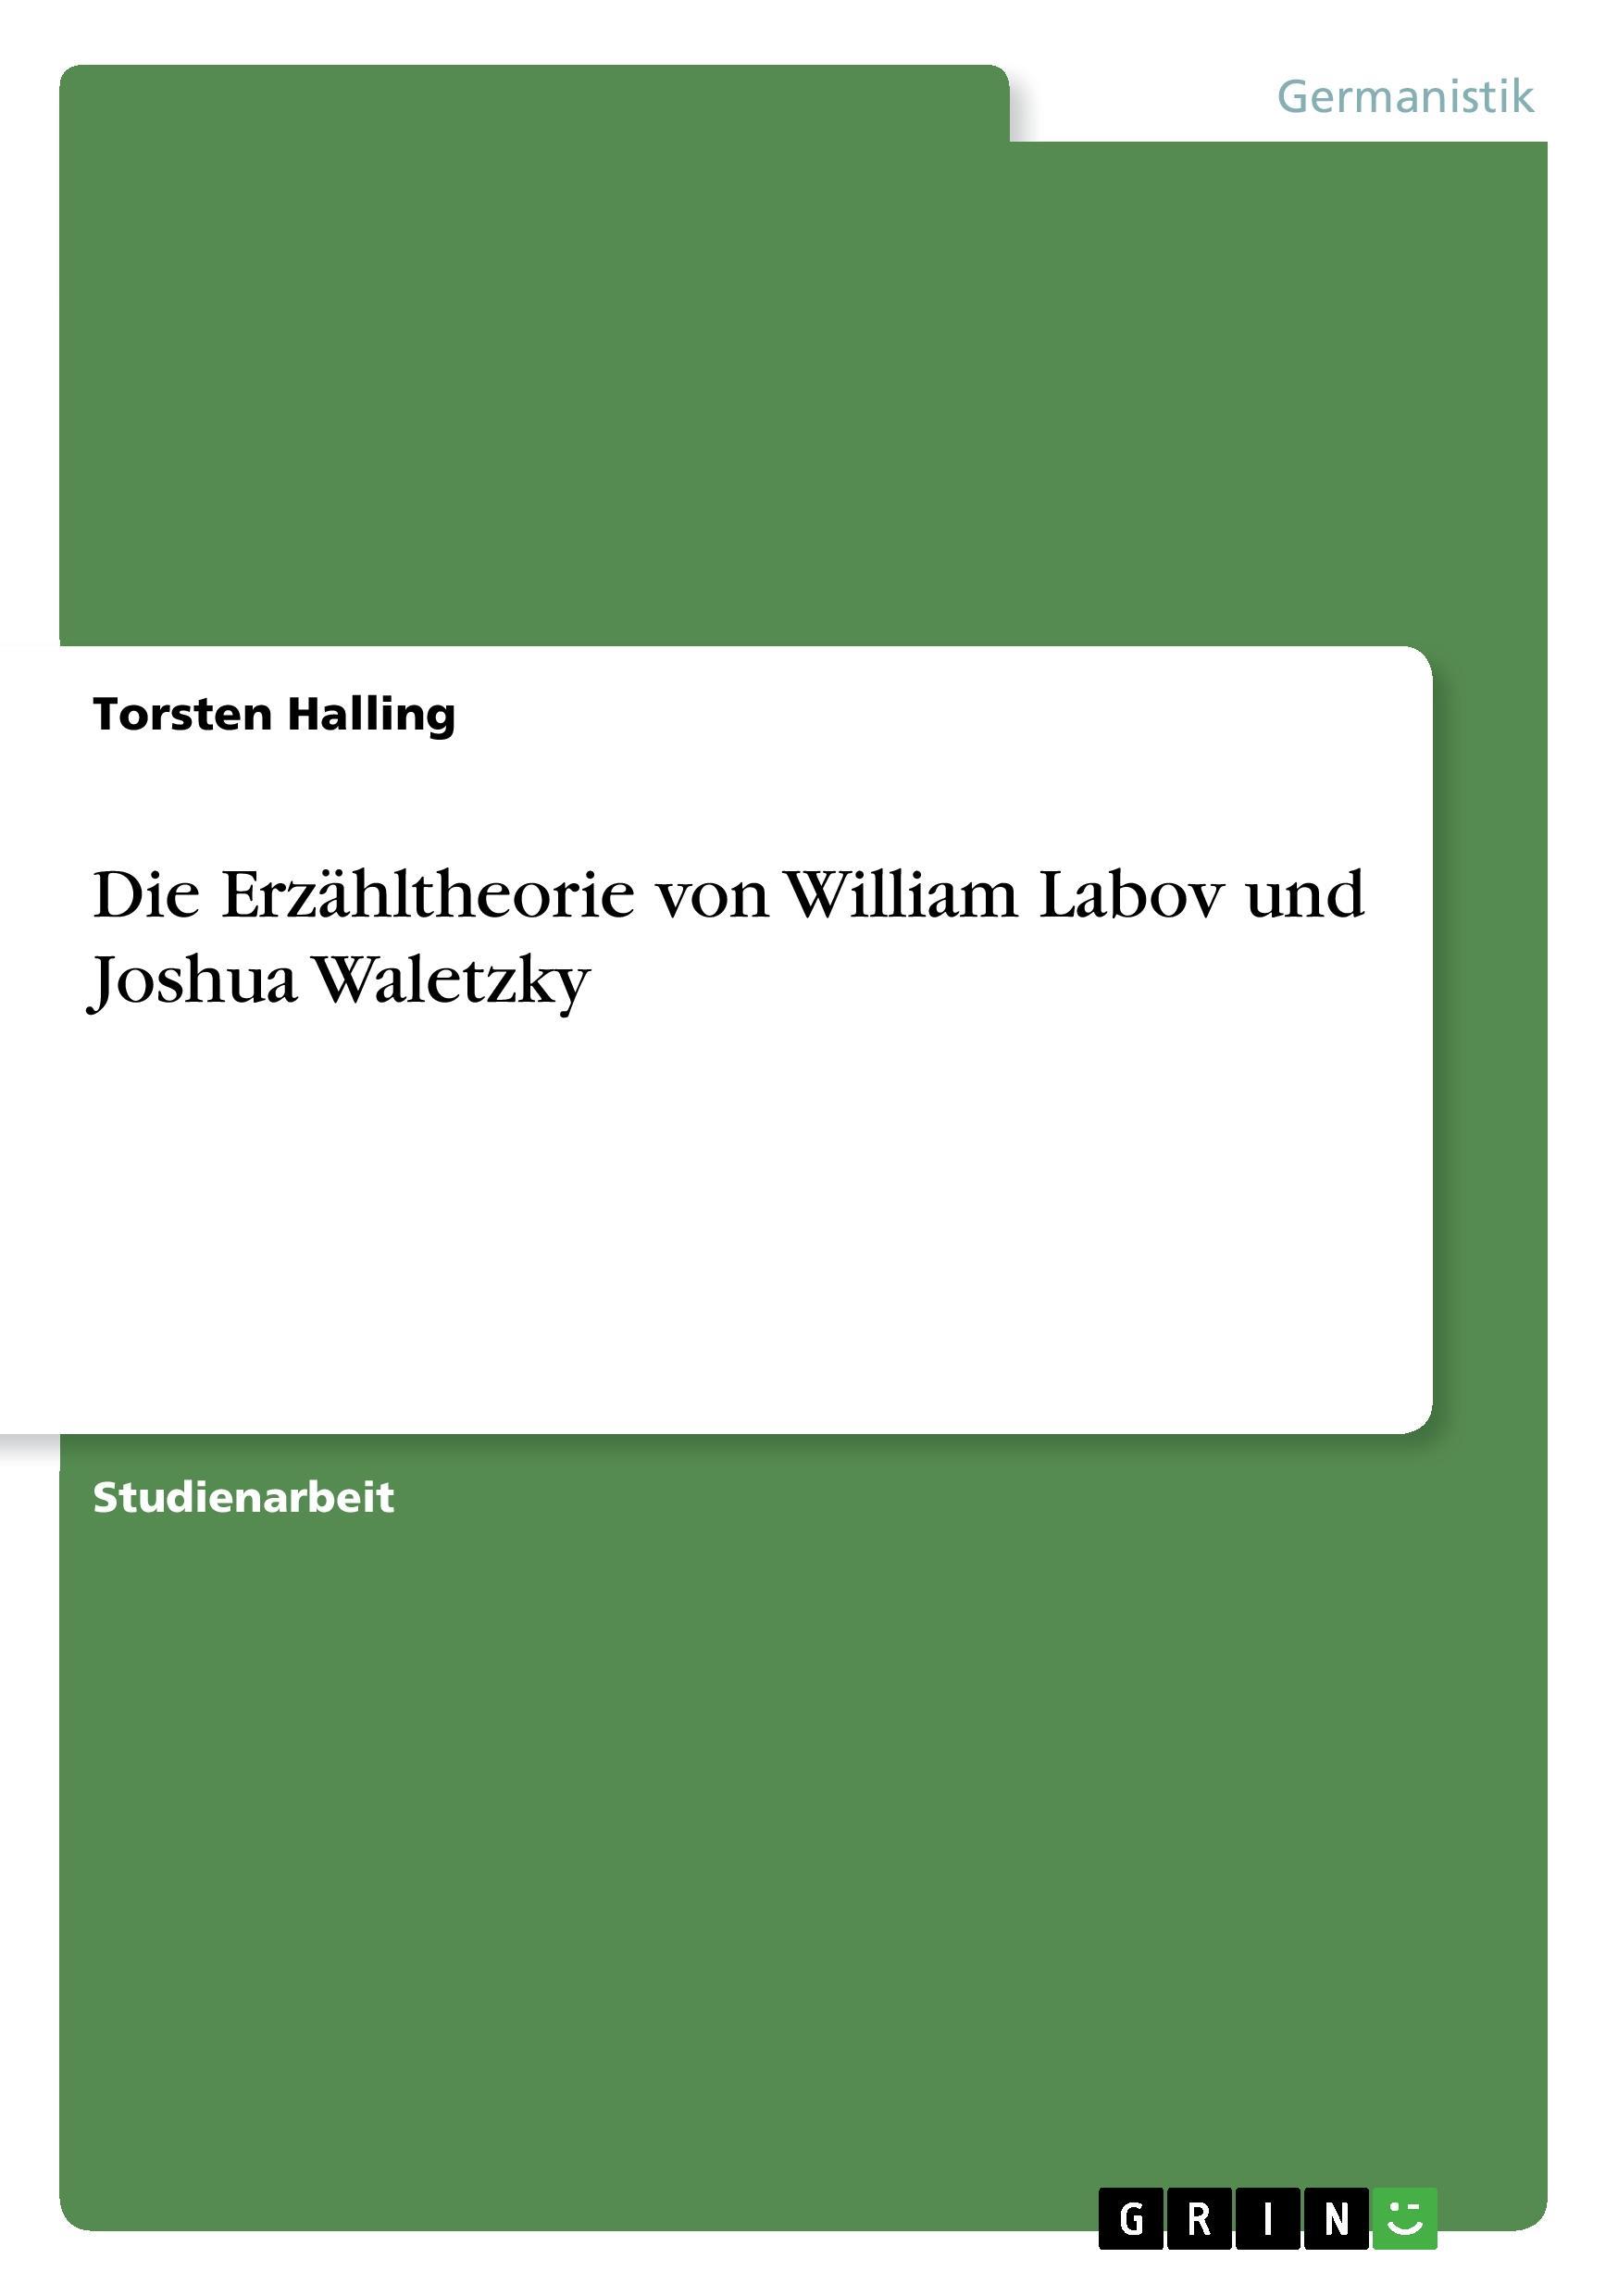 Die Erzaehltheorie von William Labov und Joshua Waletzky - Halling, Torsten